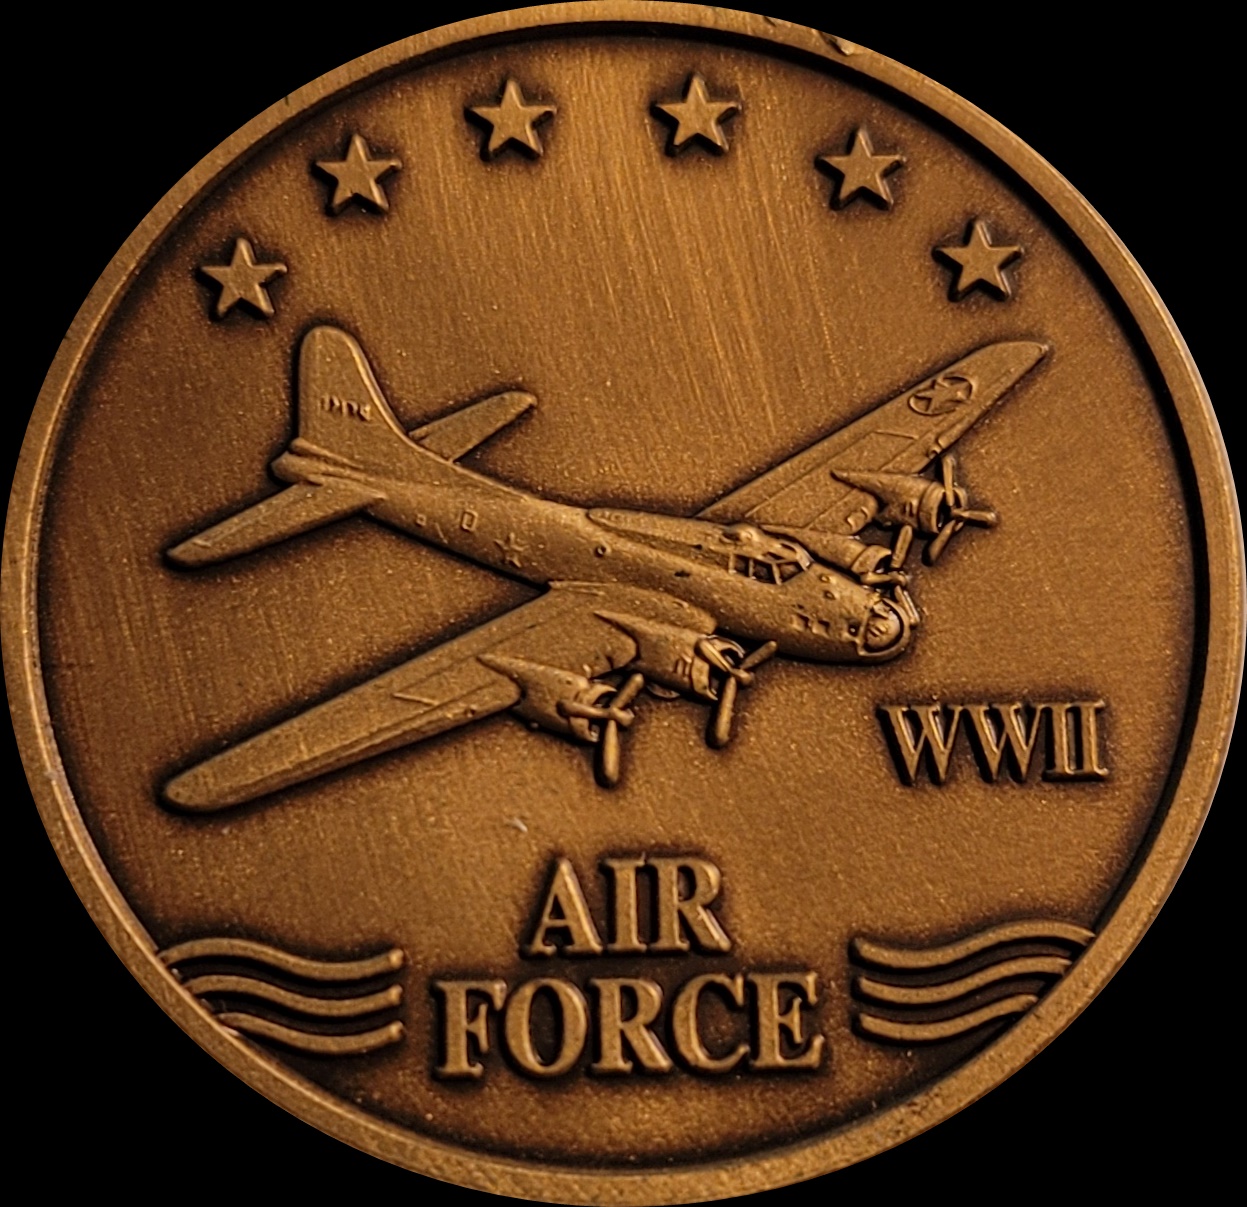 WW 2 Air force.jpg